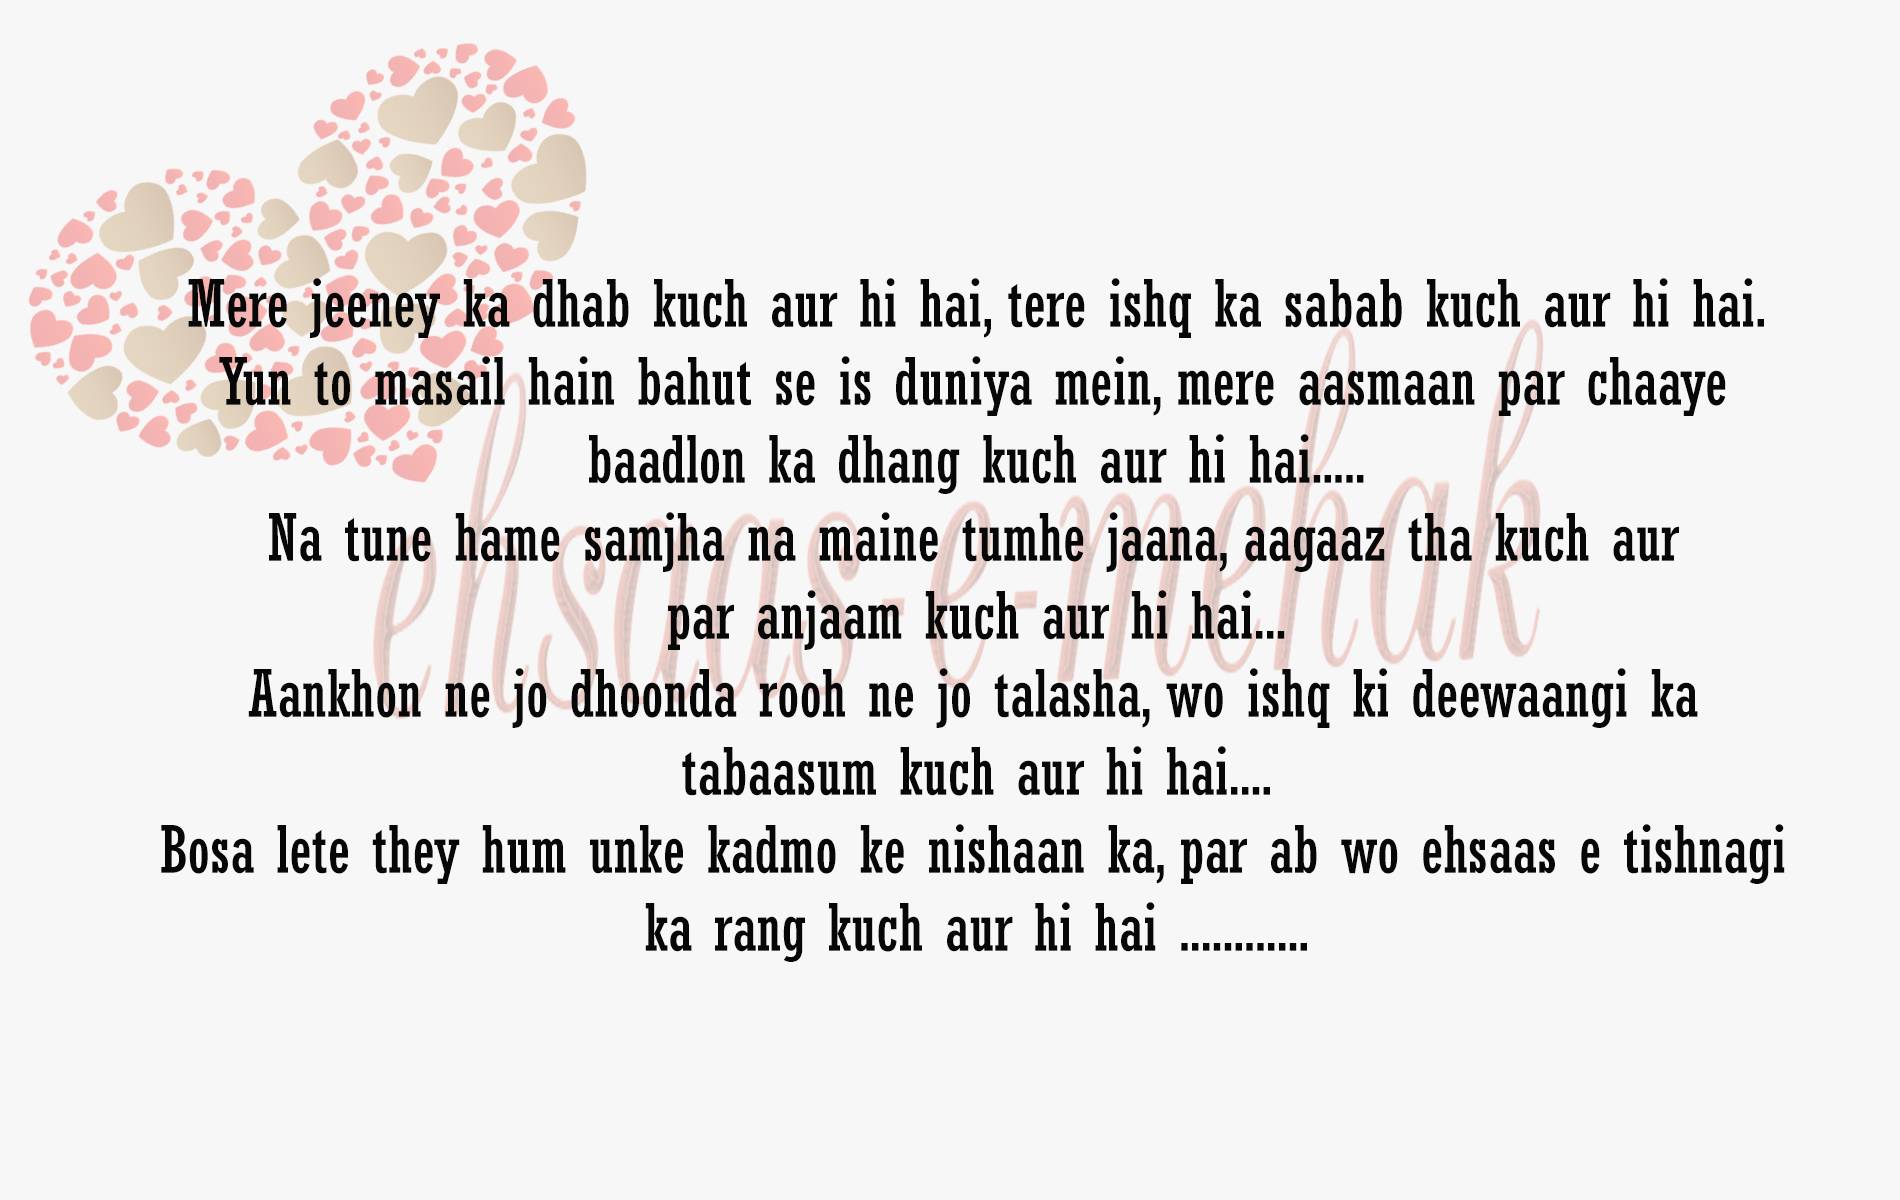 best hindi shayari for love, best love shayari in hindi, blogs, hindi poetry, hindi poetry on life, hindi shayari, Indian poetry writers, judaai shayari, love hindi shayari, Love quotes with image, poetry images in hindi, poetry in hindi, sad shayri, shayari in hindi